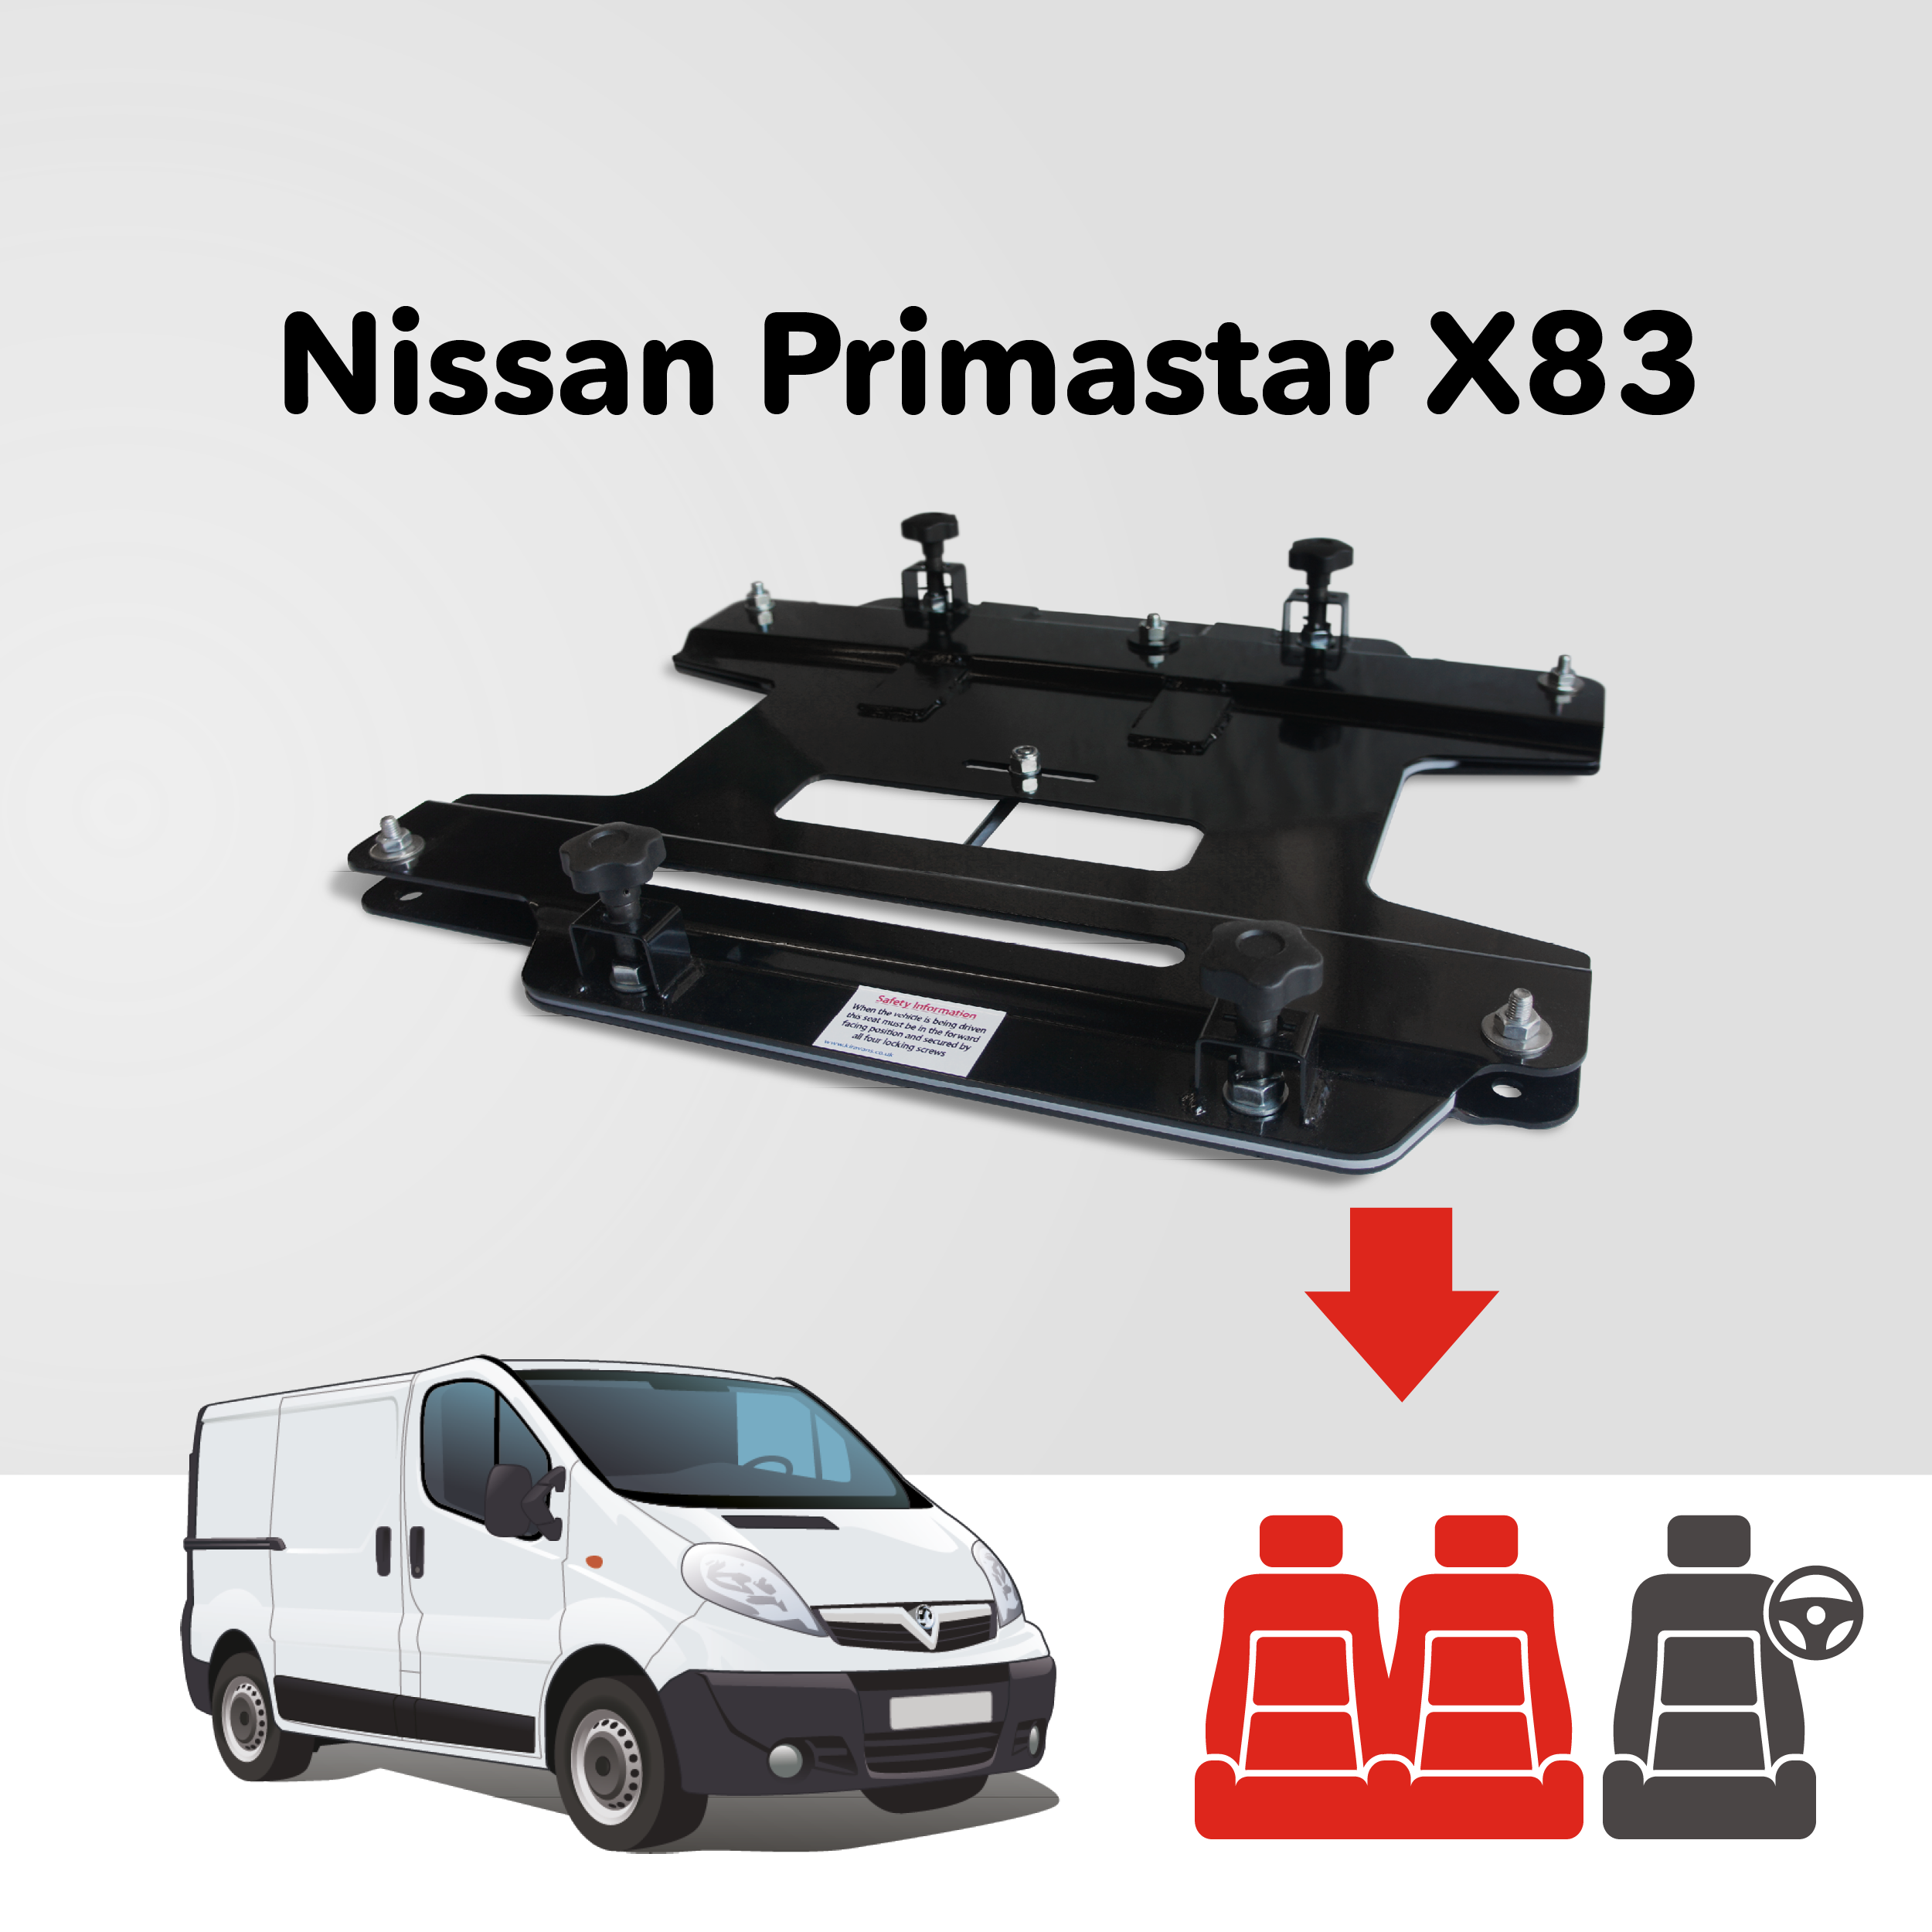 Base tournante double banquette Kiravans - Nissan Primastar 2001-2014 2.Gen (UE - Conduite à gauche)